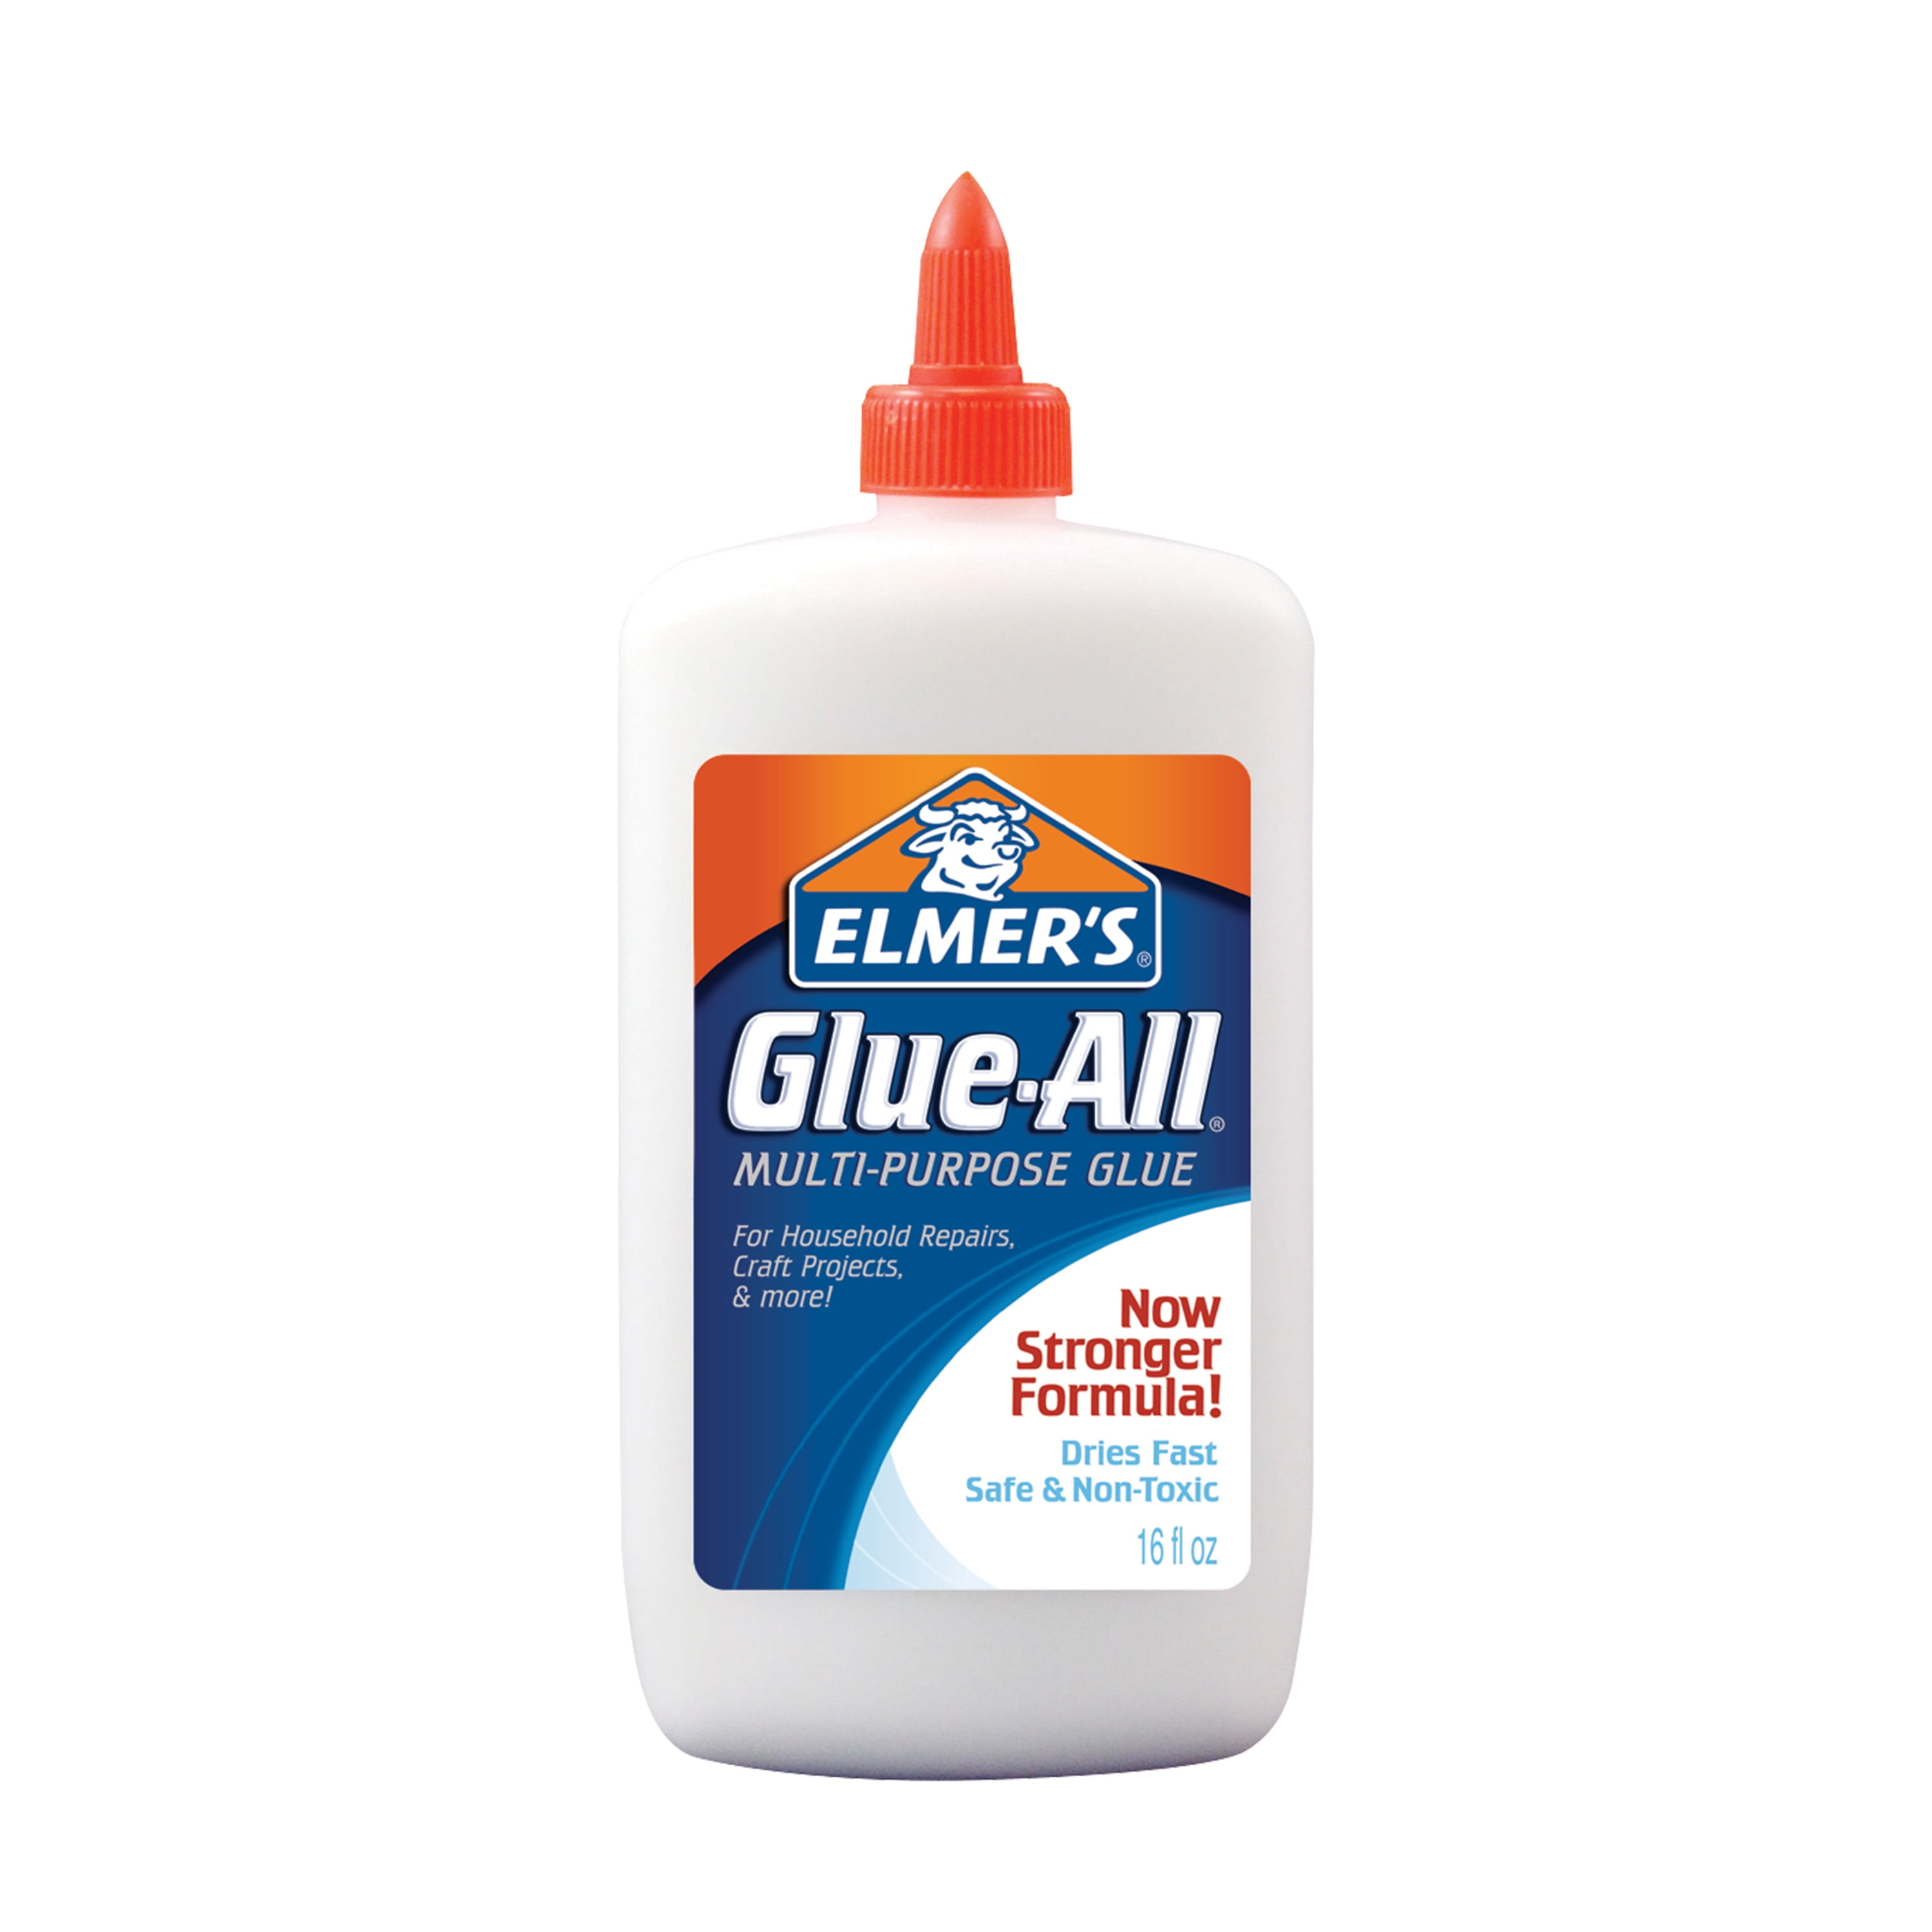 Elmers Glue-All Multi-Purpose Liquid Glue, Extra UK